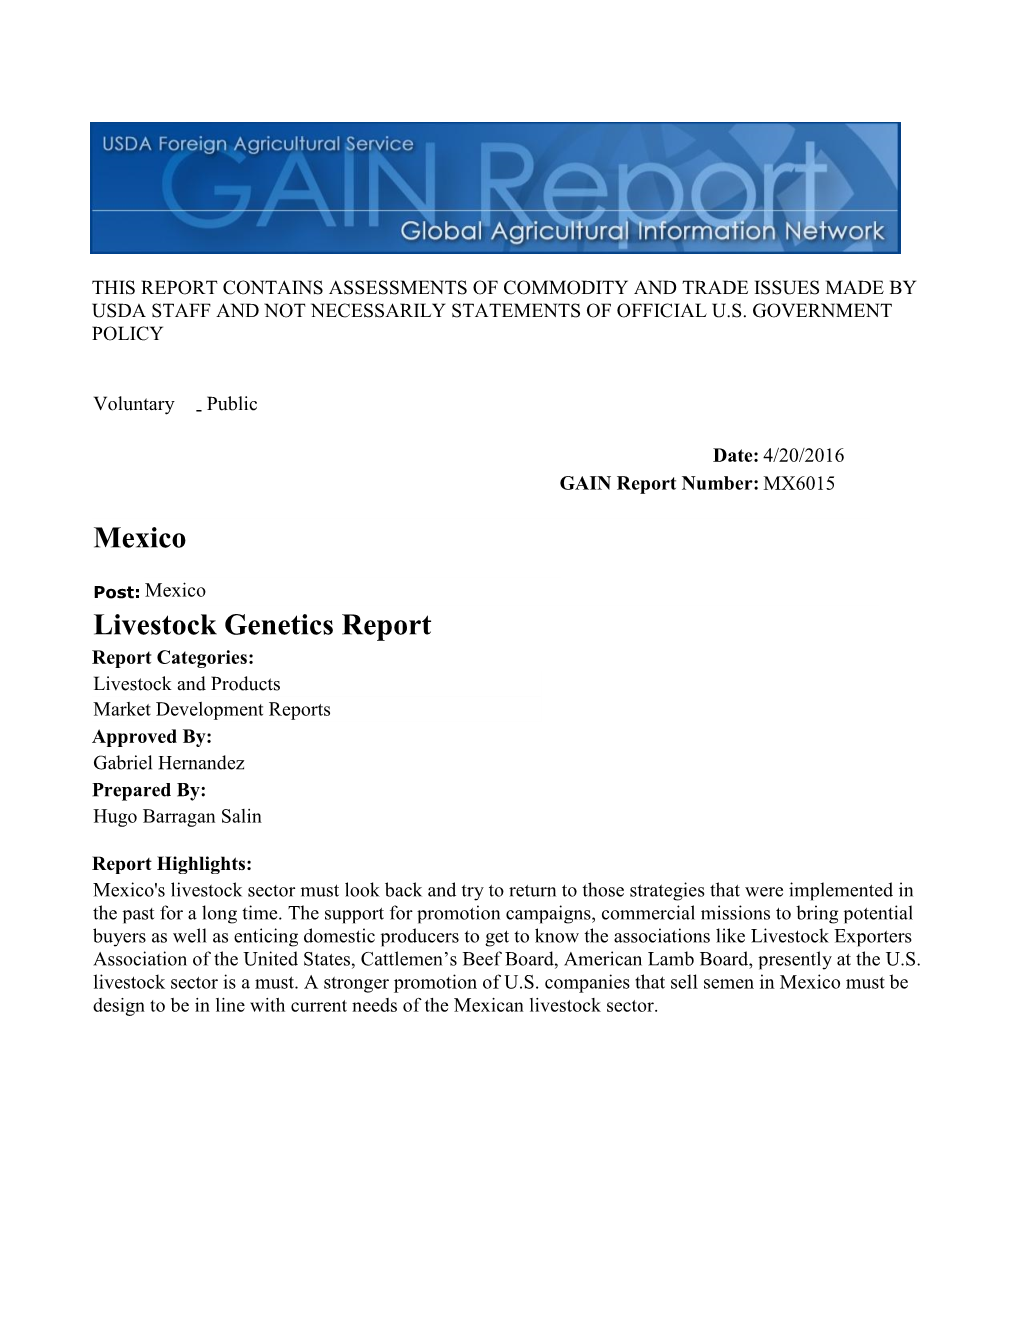 Livestock Genetics Report Mexico